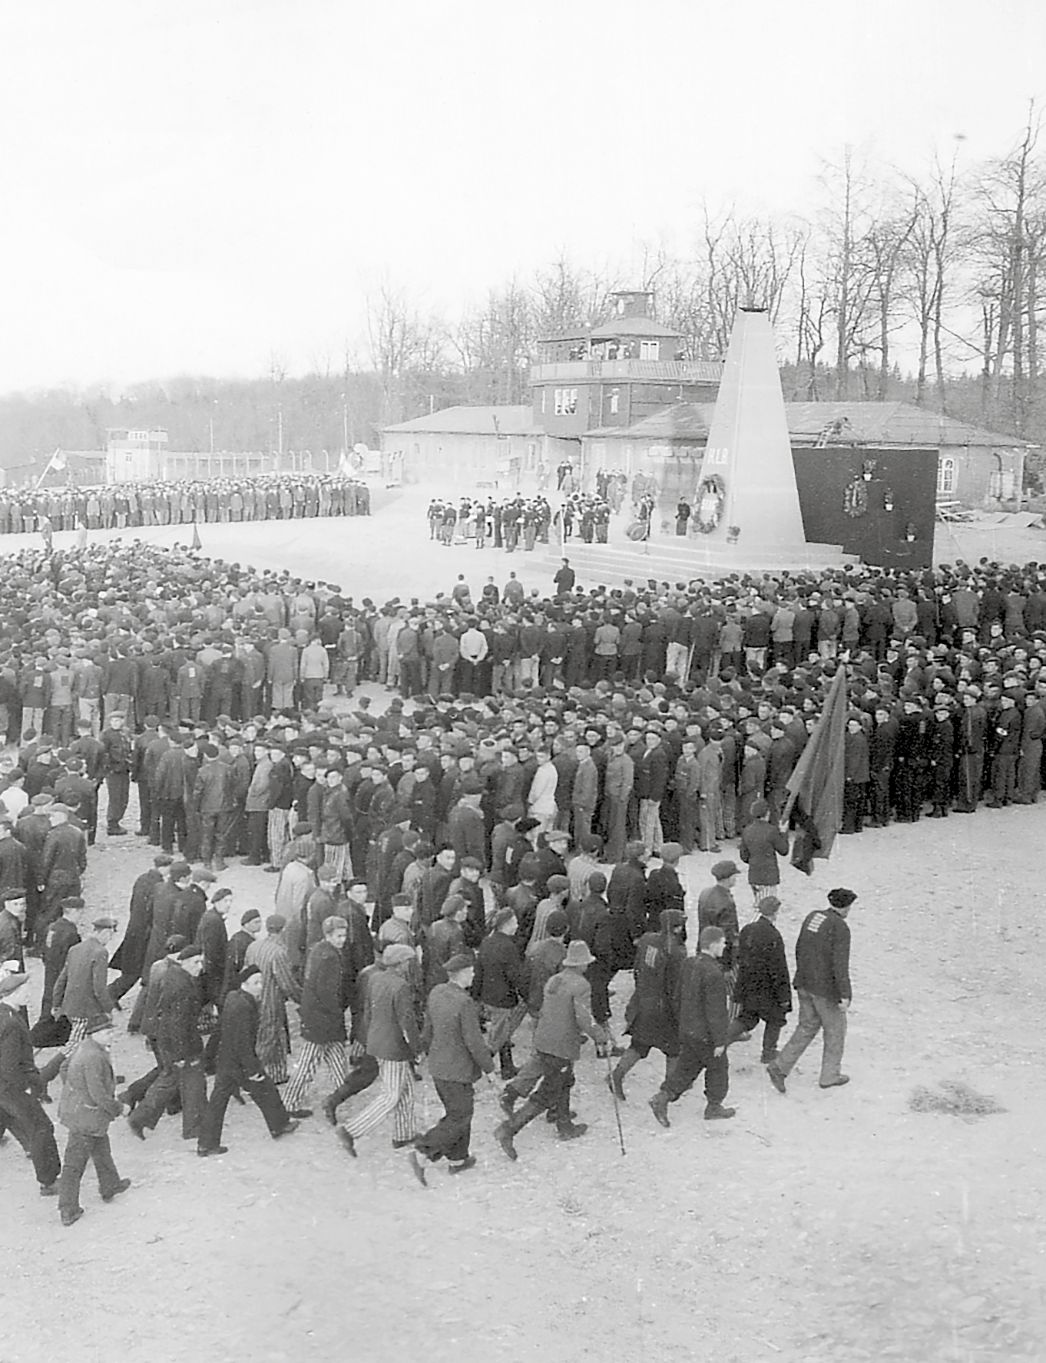 Schwarz-Weiß-Foto: Menschenmenge (ehemalige Häftlinge) vor dem Obelisken, der wiederum auf dem Lagergelände vor dem Lagertor steht